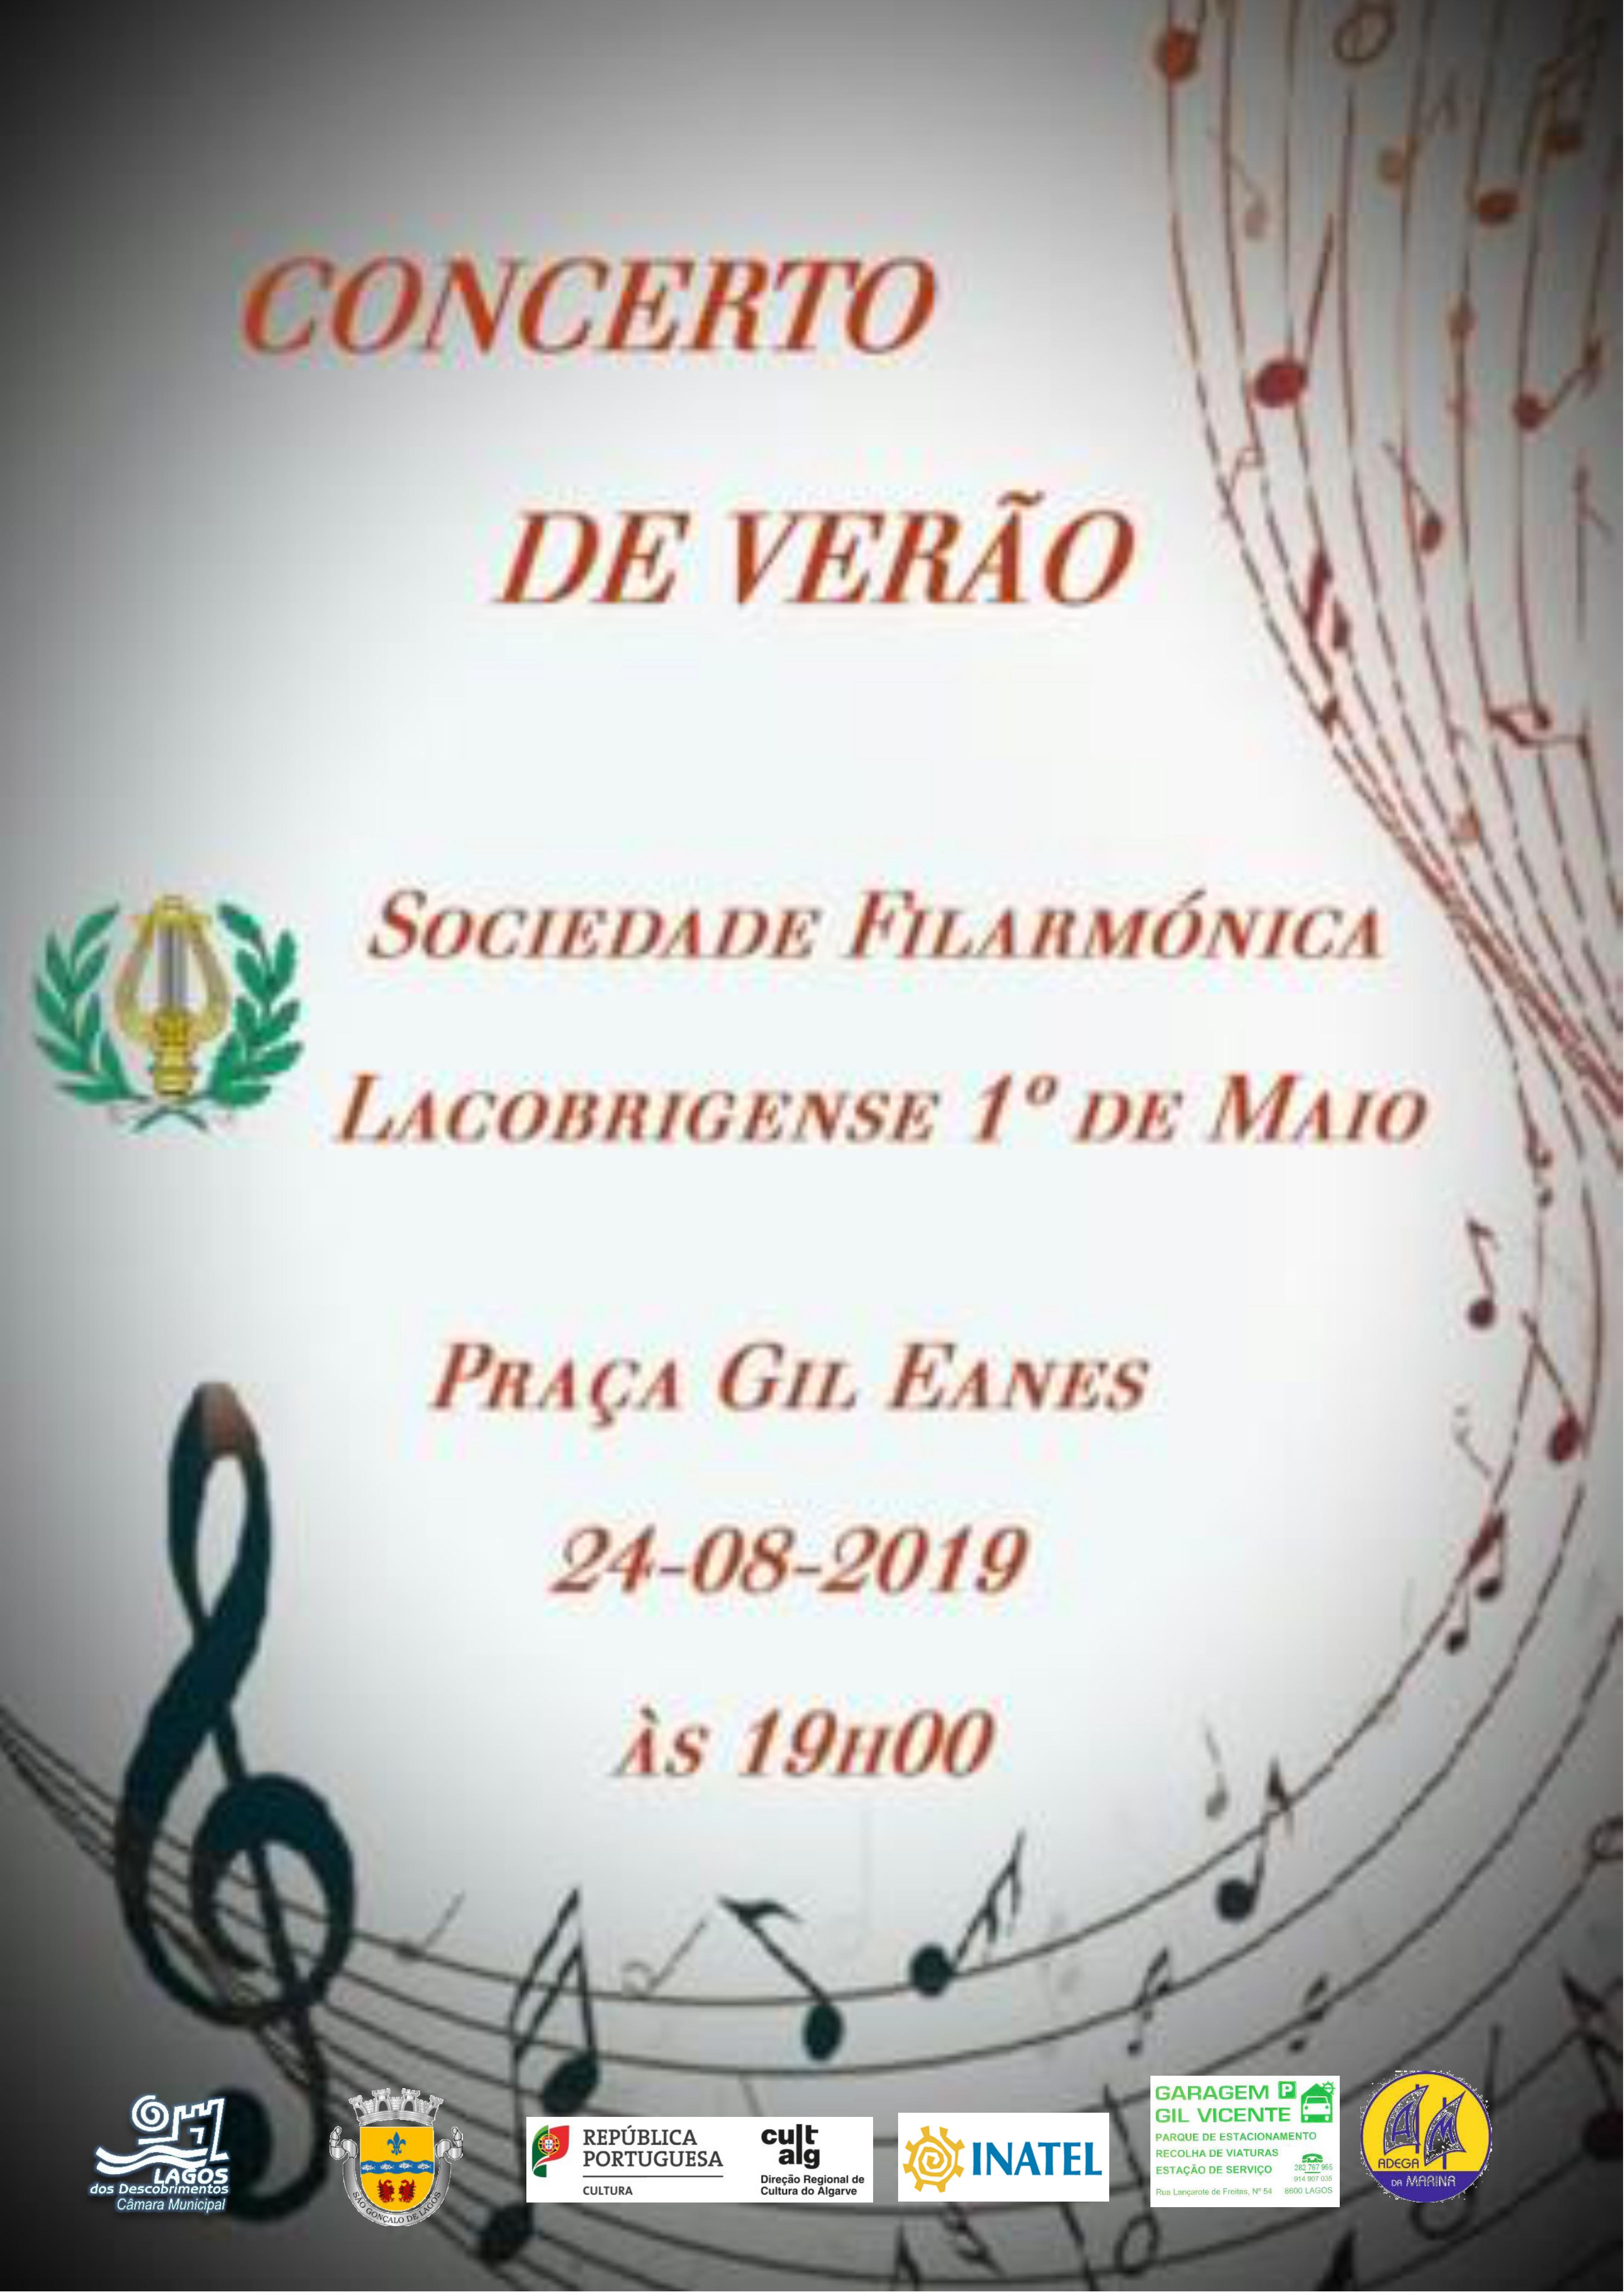 Concerto de Verão da Banda Filarmónica Lacobrigense 1º de Maio na Praça Gil Eanes